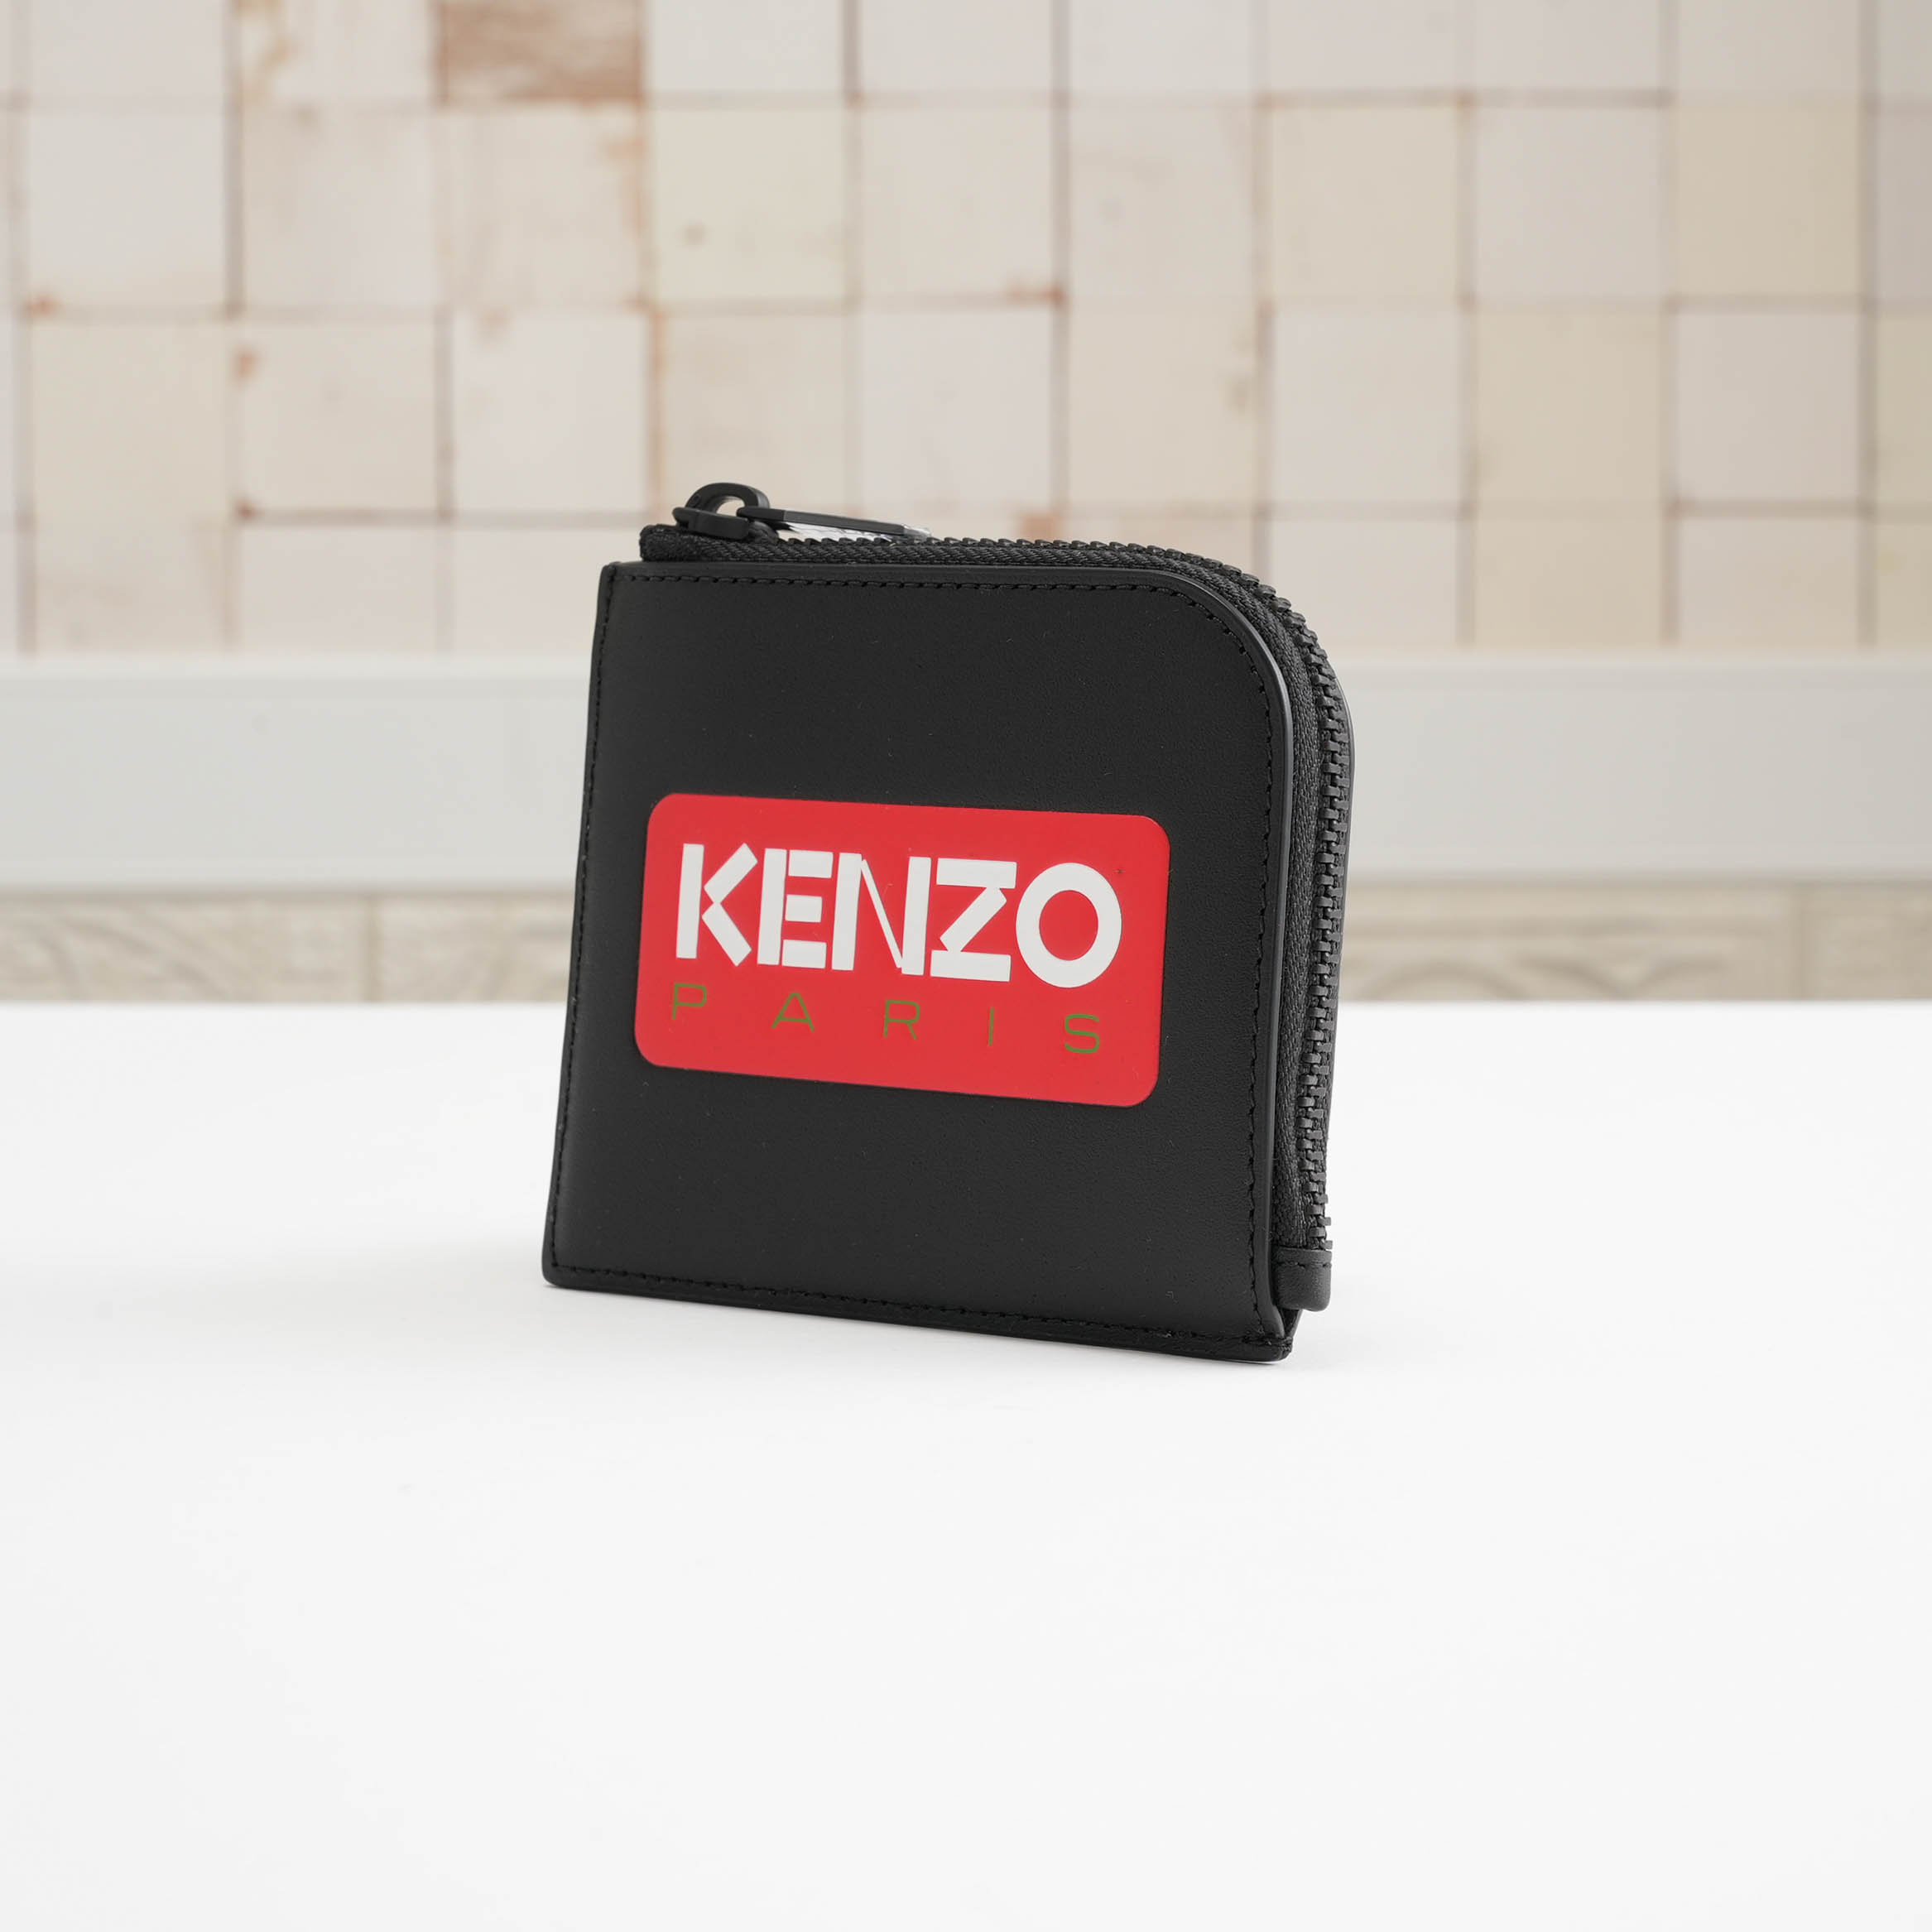 KENZO PARIS レザー ウォレット ミニウォレット 皮 革 コインケース カードケース メンズ 男性 ブラック 黒